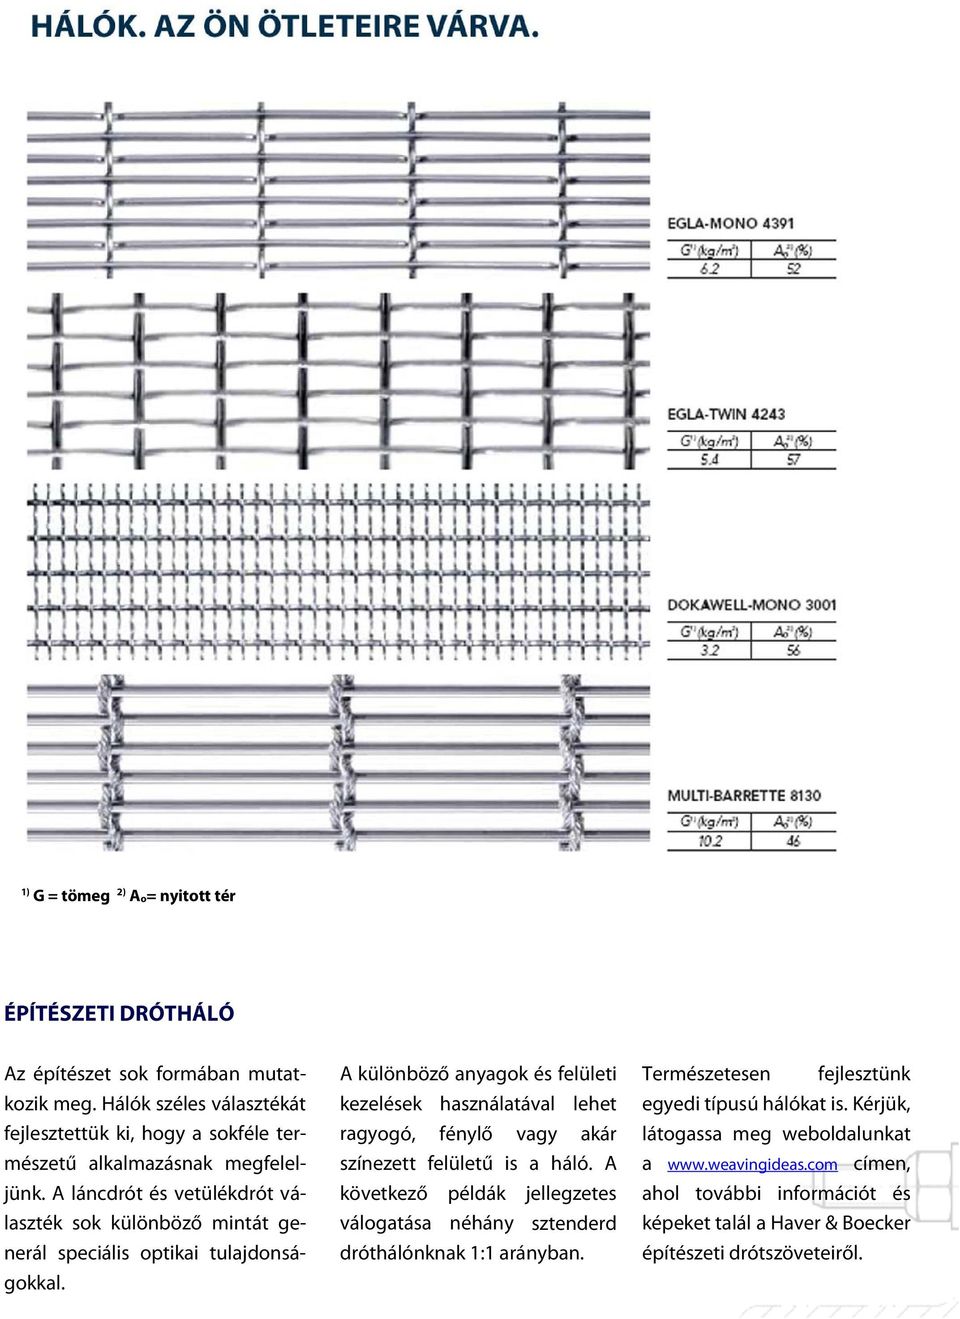 A láncdrót és vetülékdrót vá- sok különböző mintát ge- laszték nerál speciális optikai tulajdonságokkal.